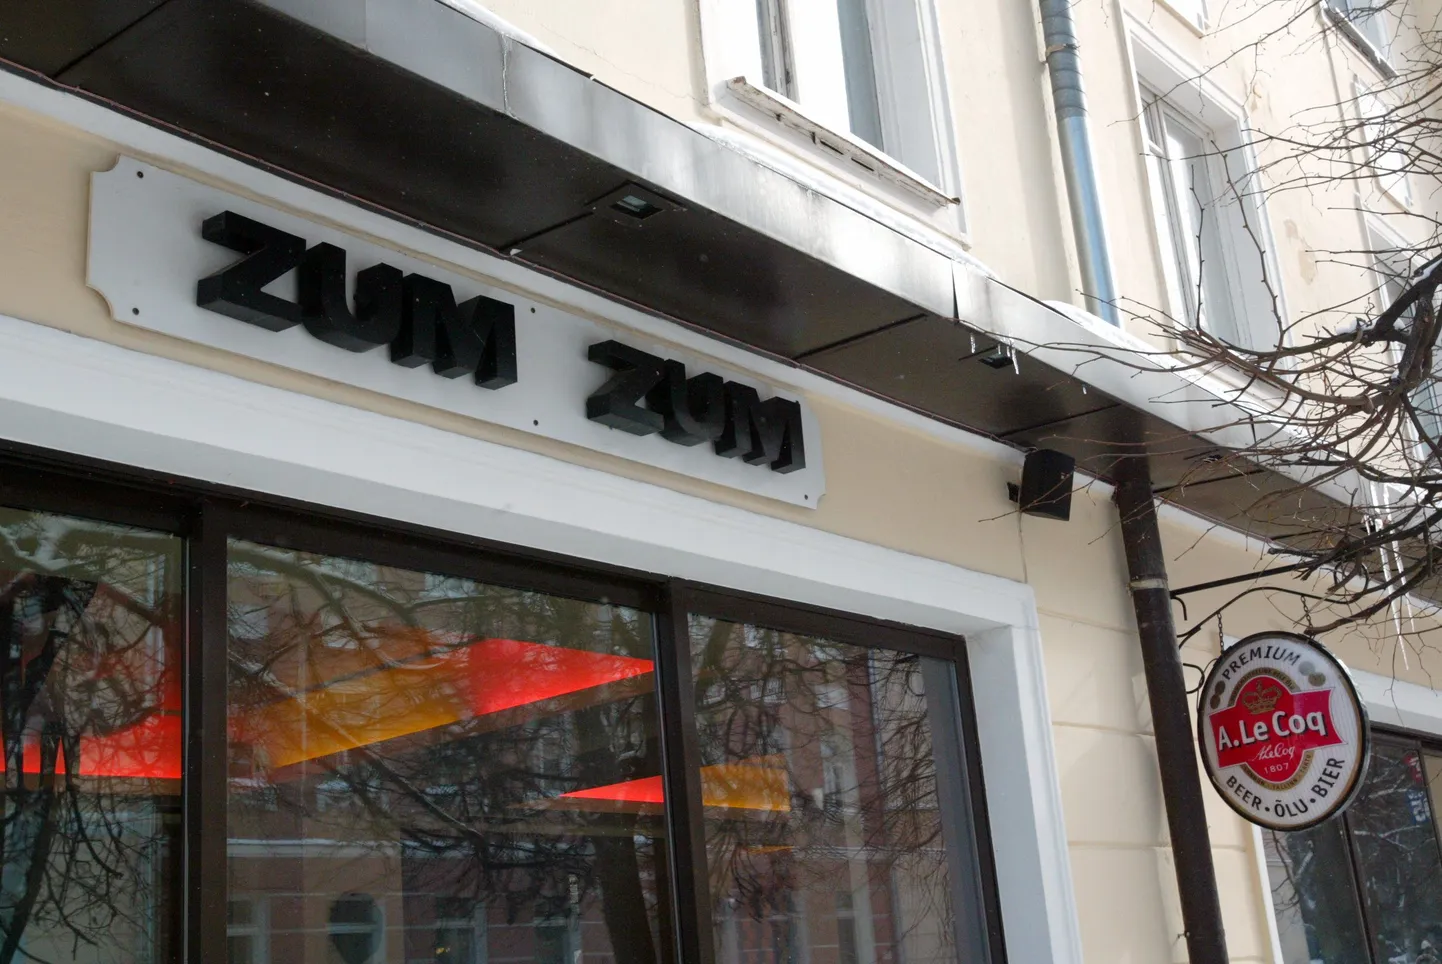 Zum Zum pubis juhtus traagiline tööõnnetus 2004. aastal 4. oktoobril.